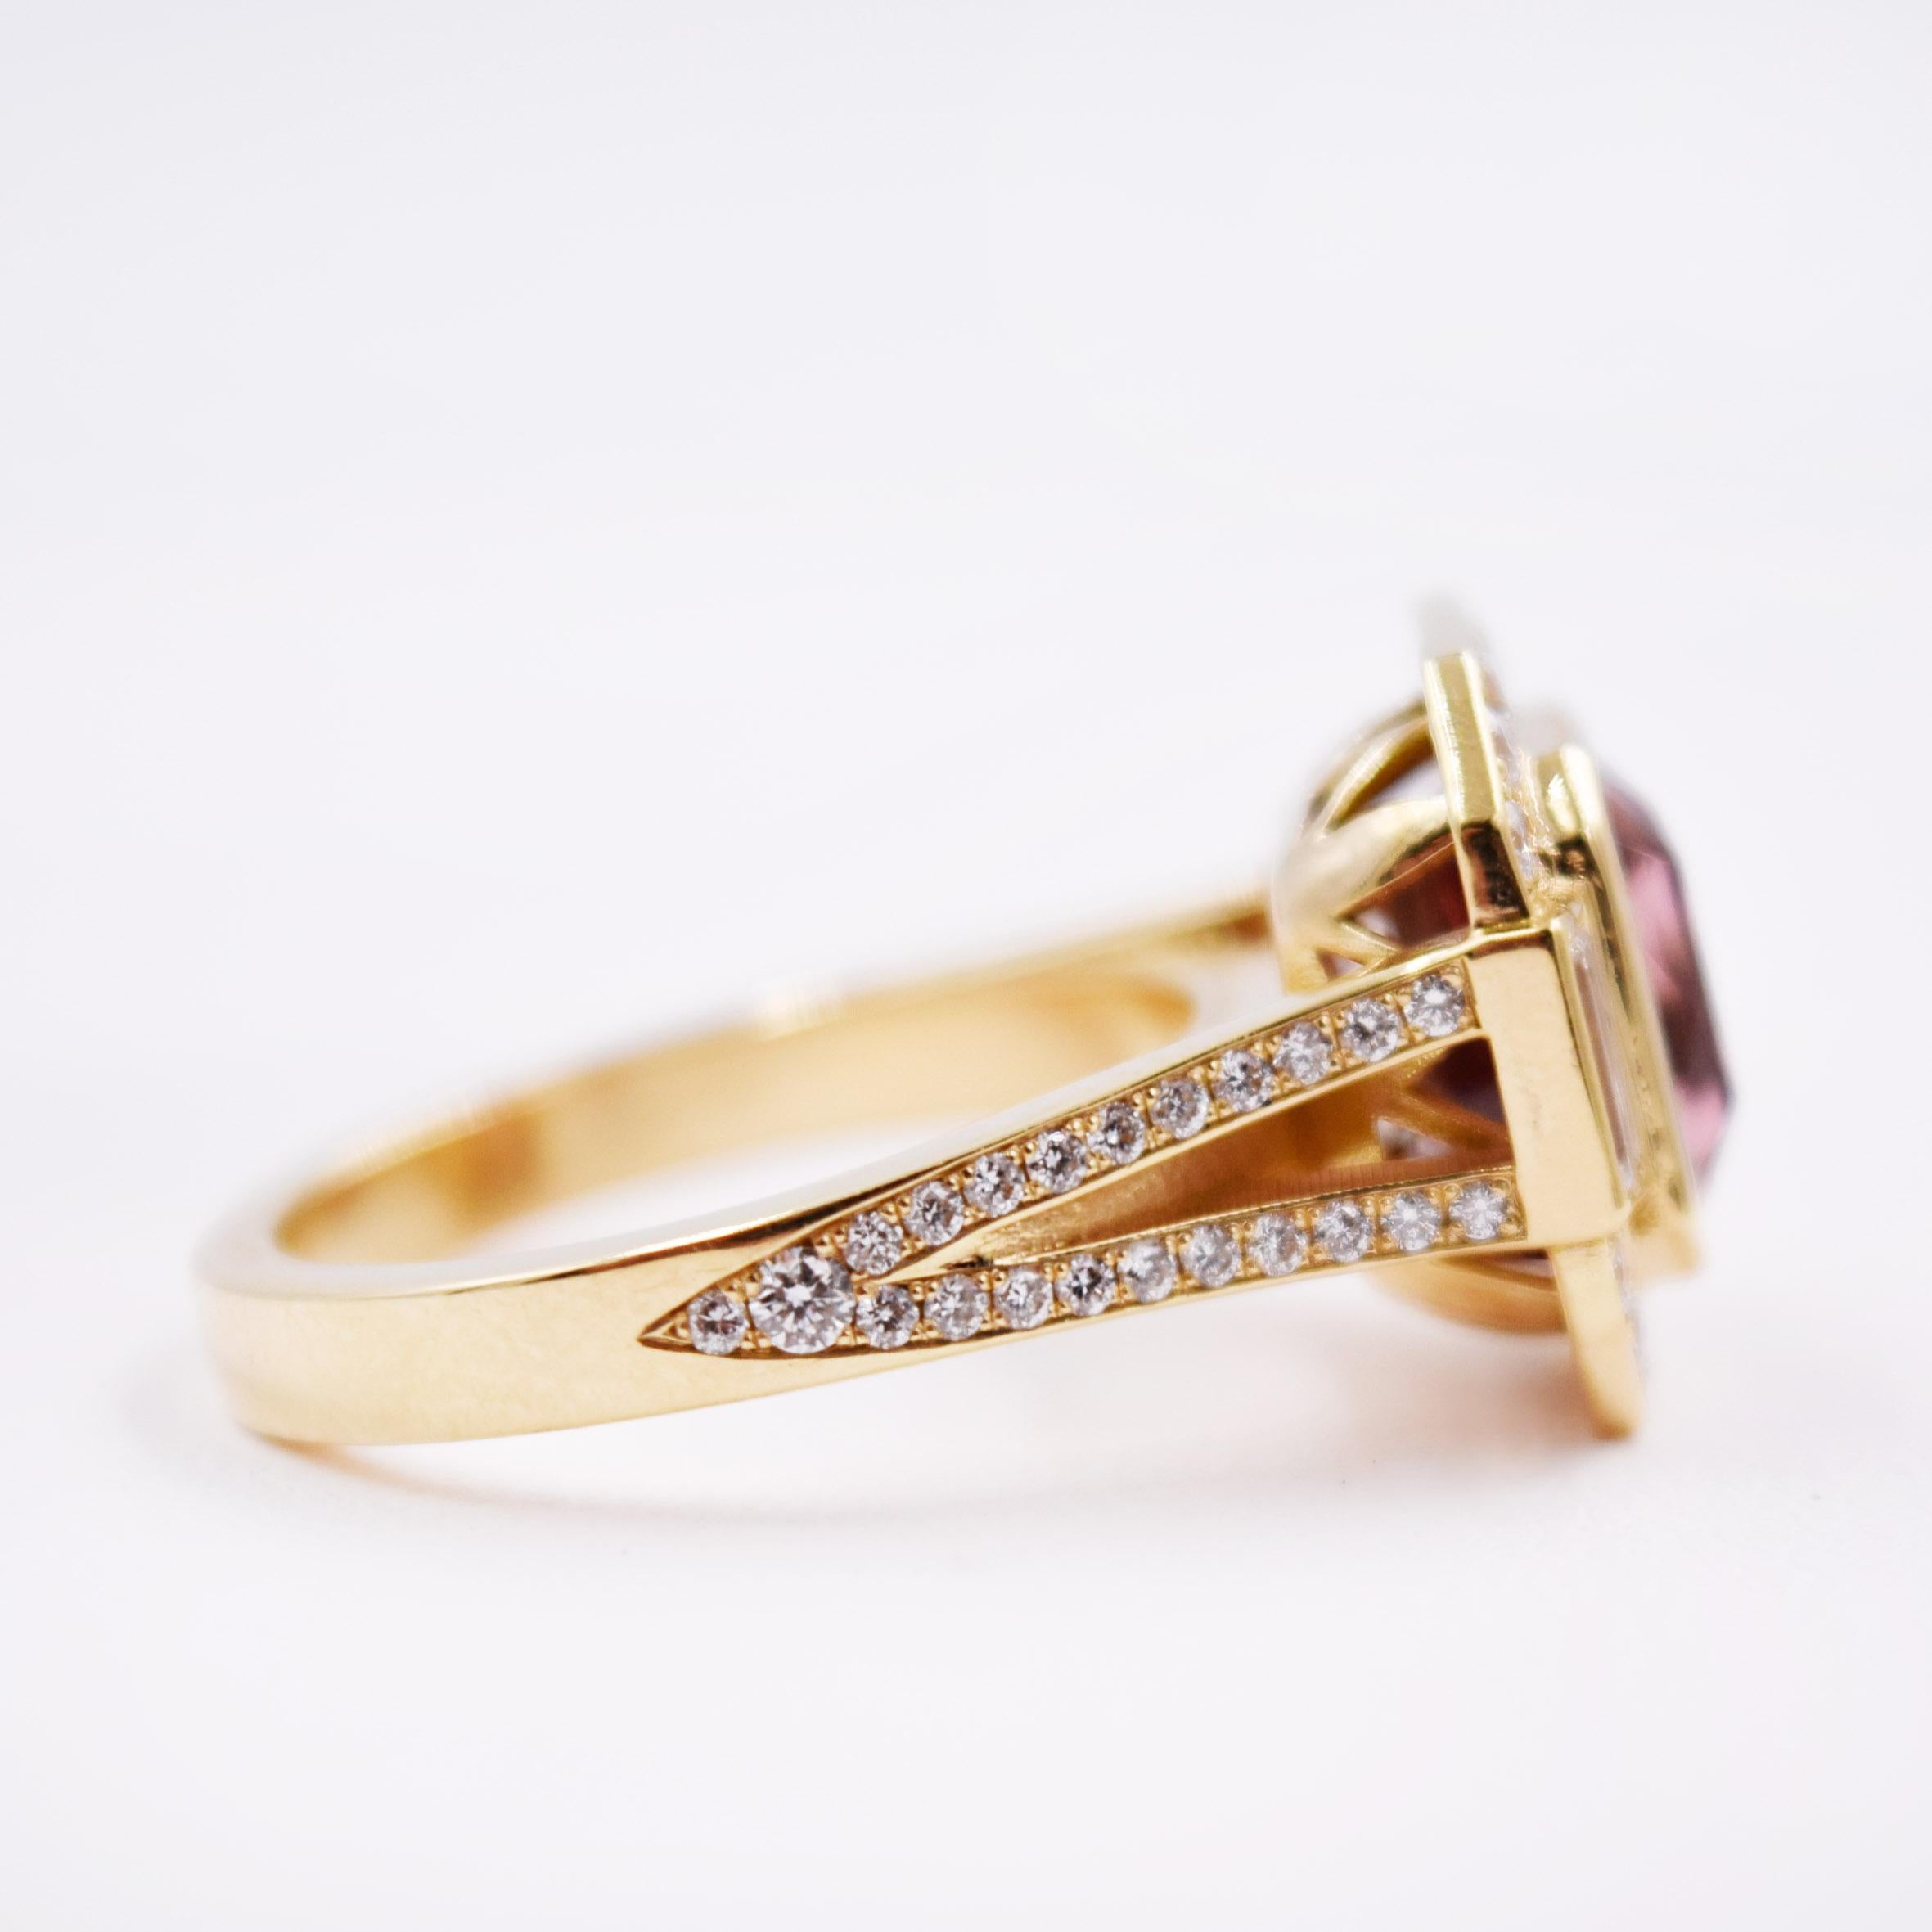 Women's 3.34 Carat Pink Tourmaline and White Diamond Statement Ring in 18 Karat Gold